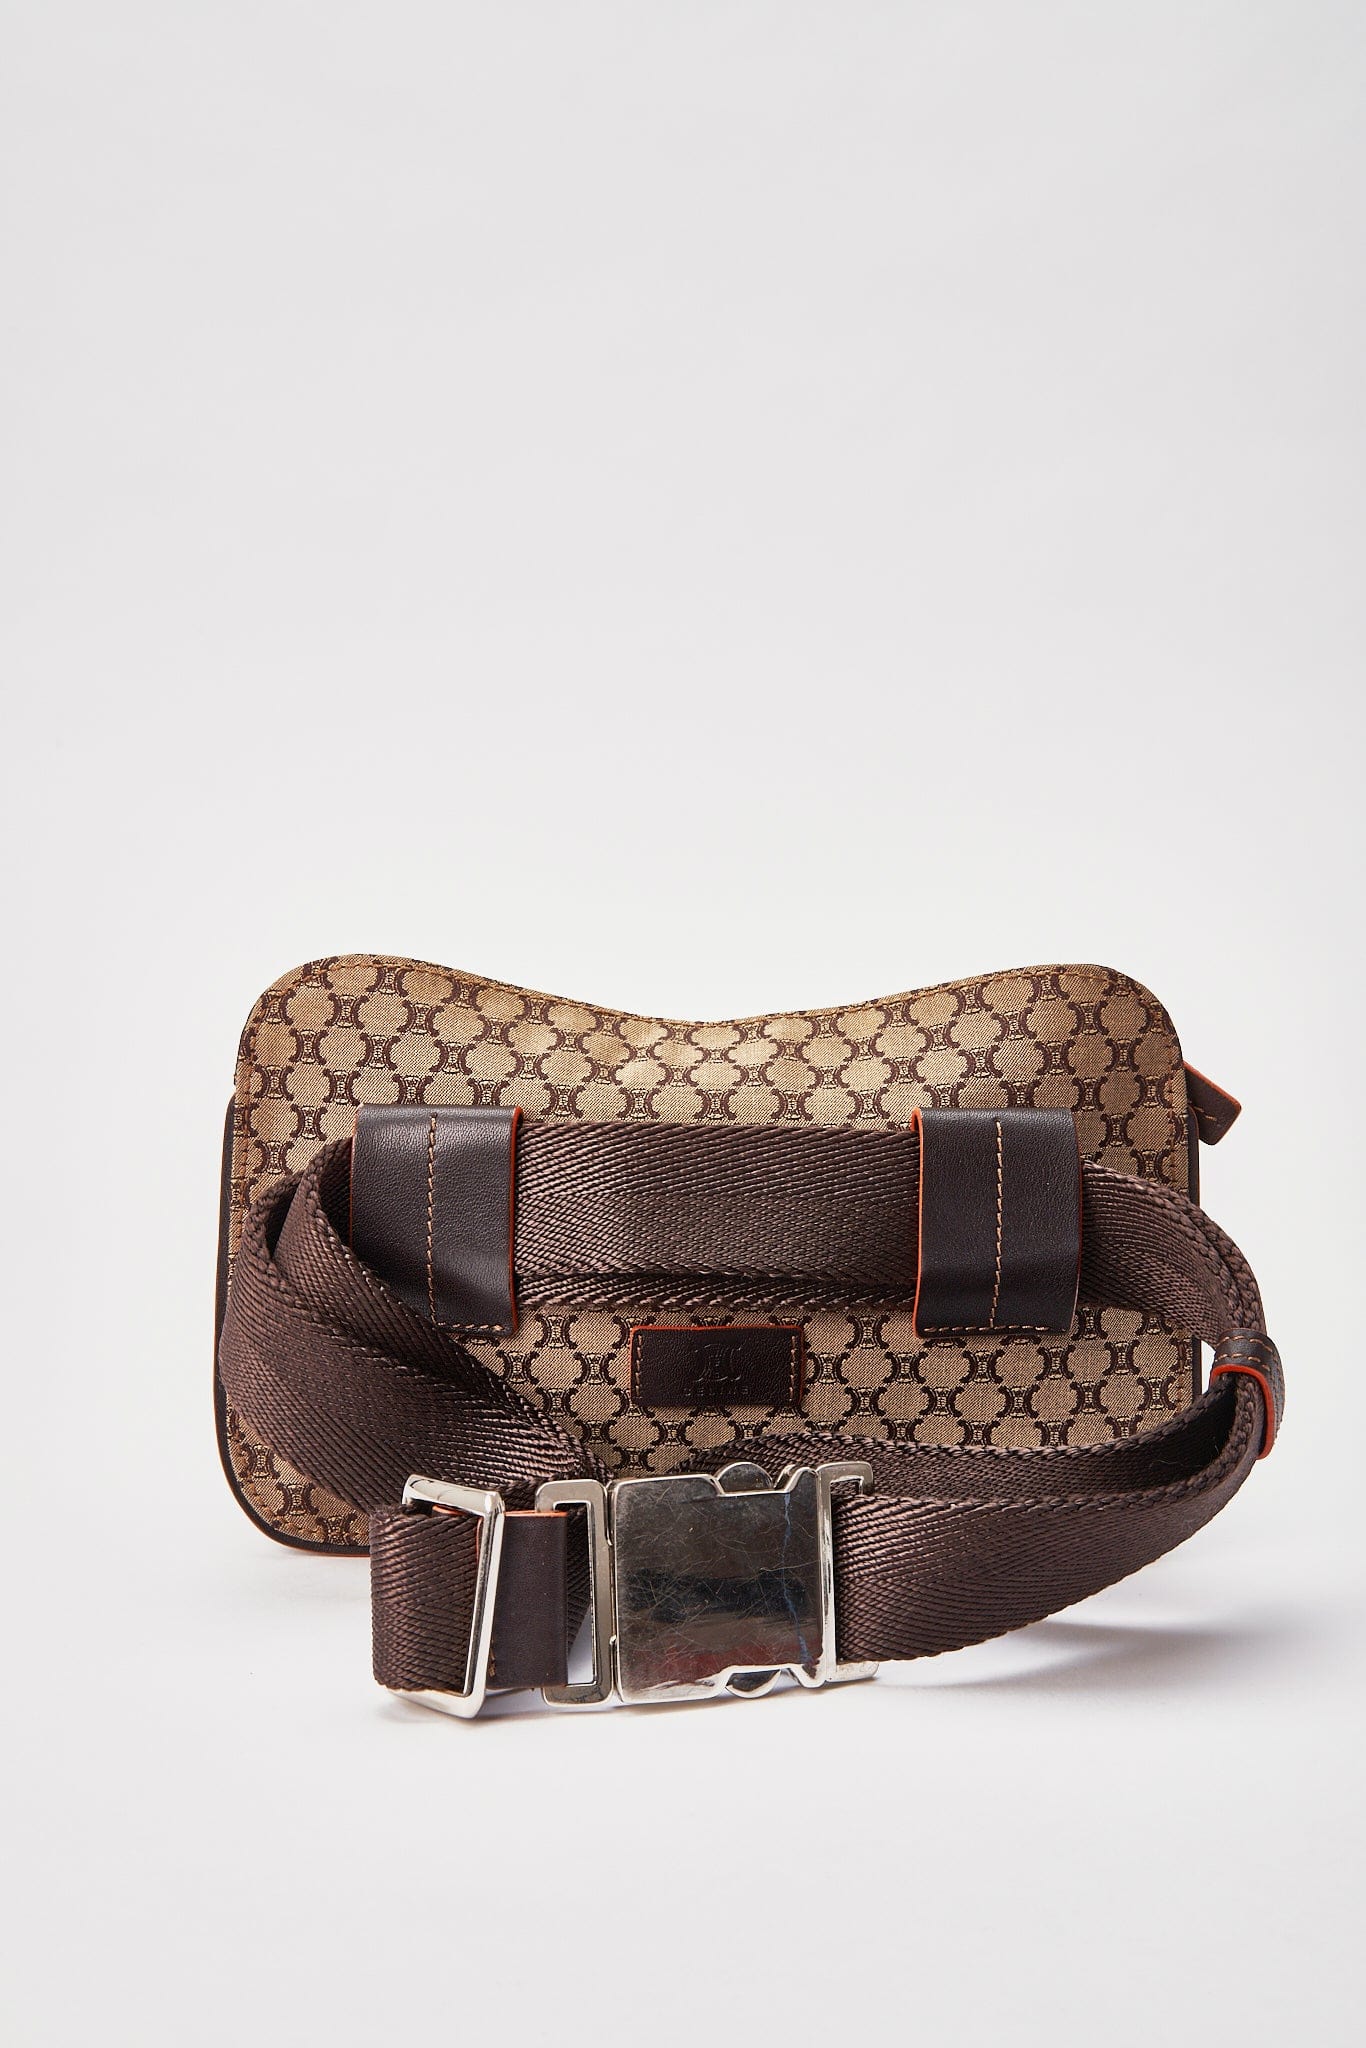 Vintage Celine Brown Triomphe Belt or Sling Bag